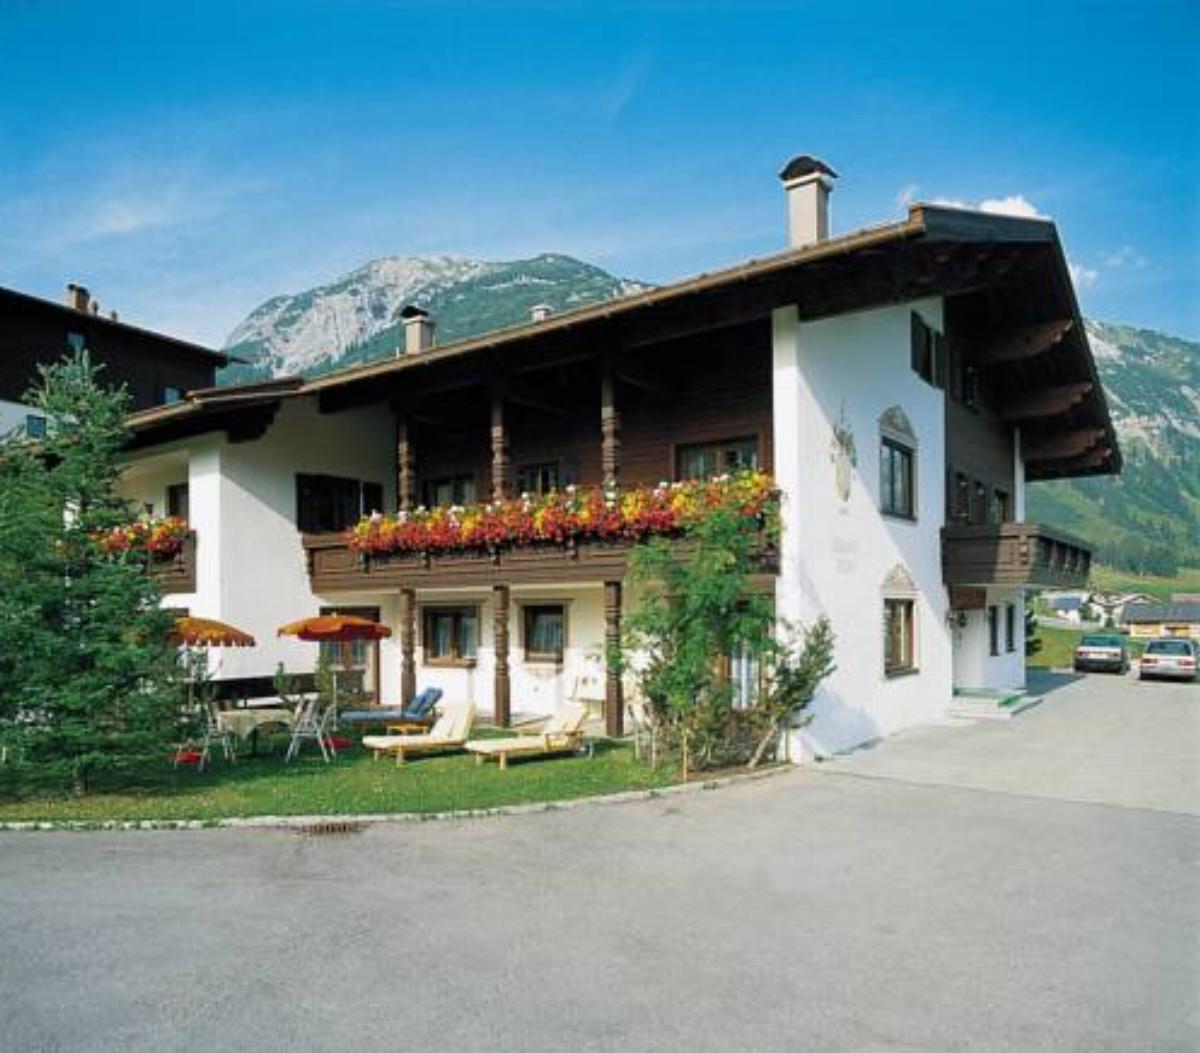 Chalet Hilde Hotel Lech am Arlberg Austria